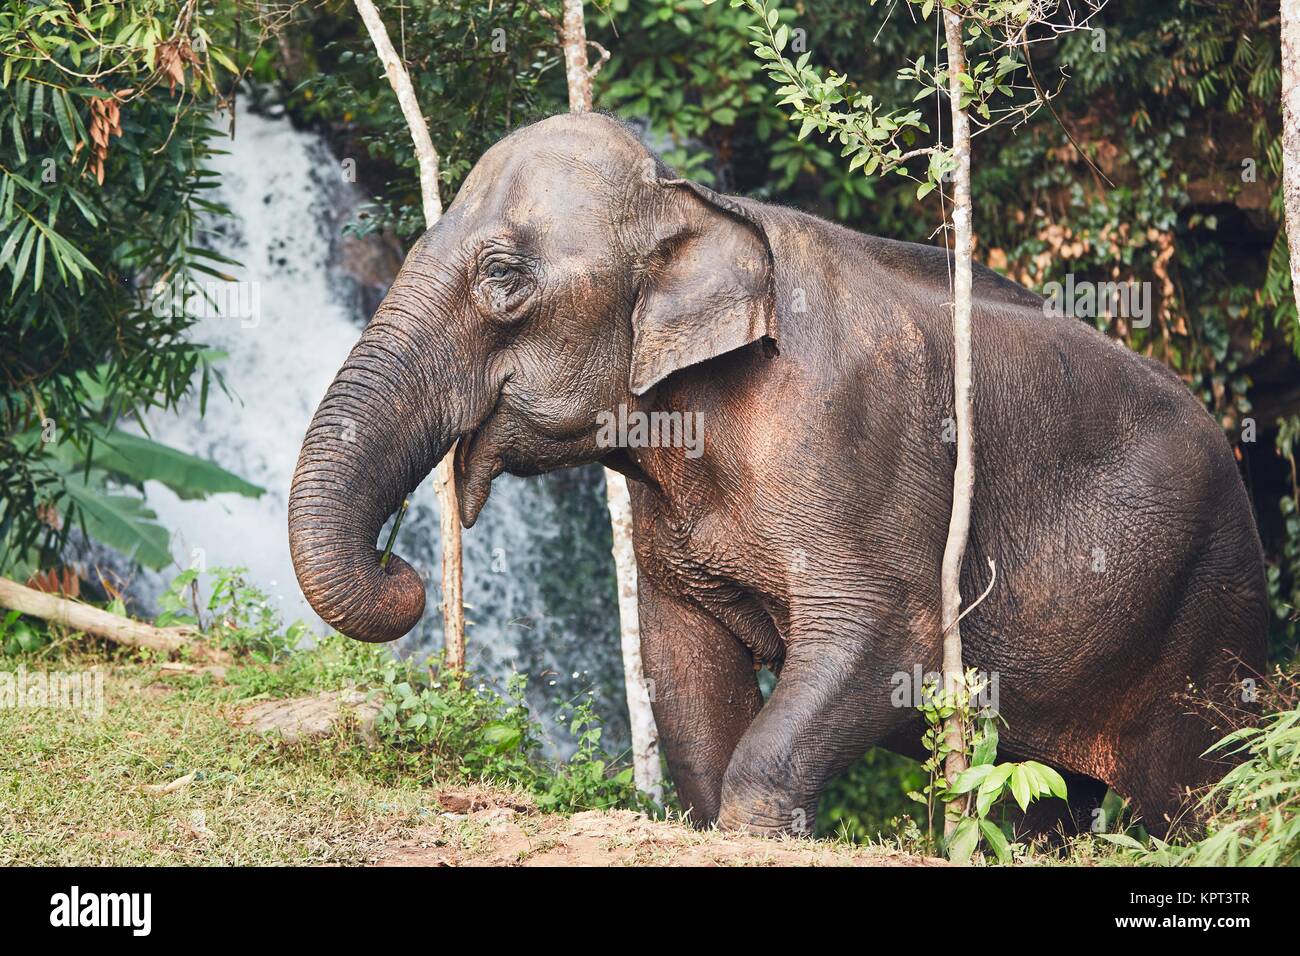 Asiatische Elefantendame gegen Wasserfall im tropischen Regenwald. Provinz Chiang Mai, Thailand. Stockfoto